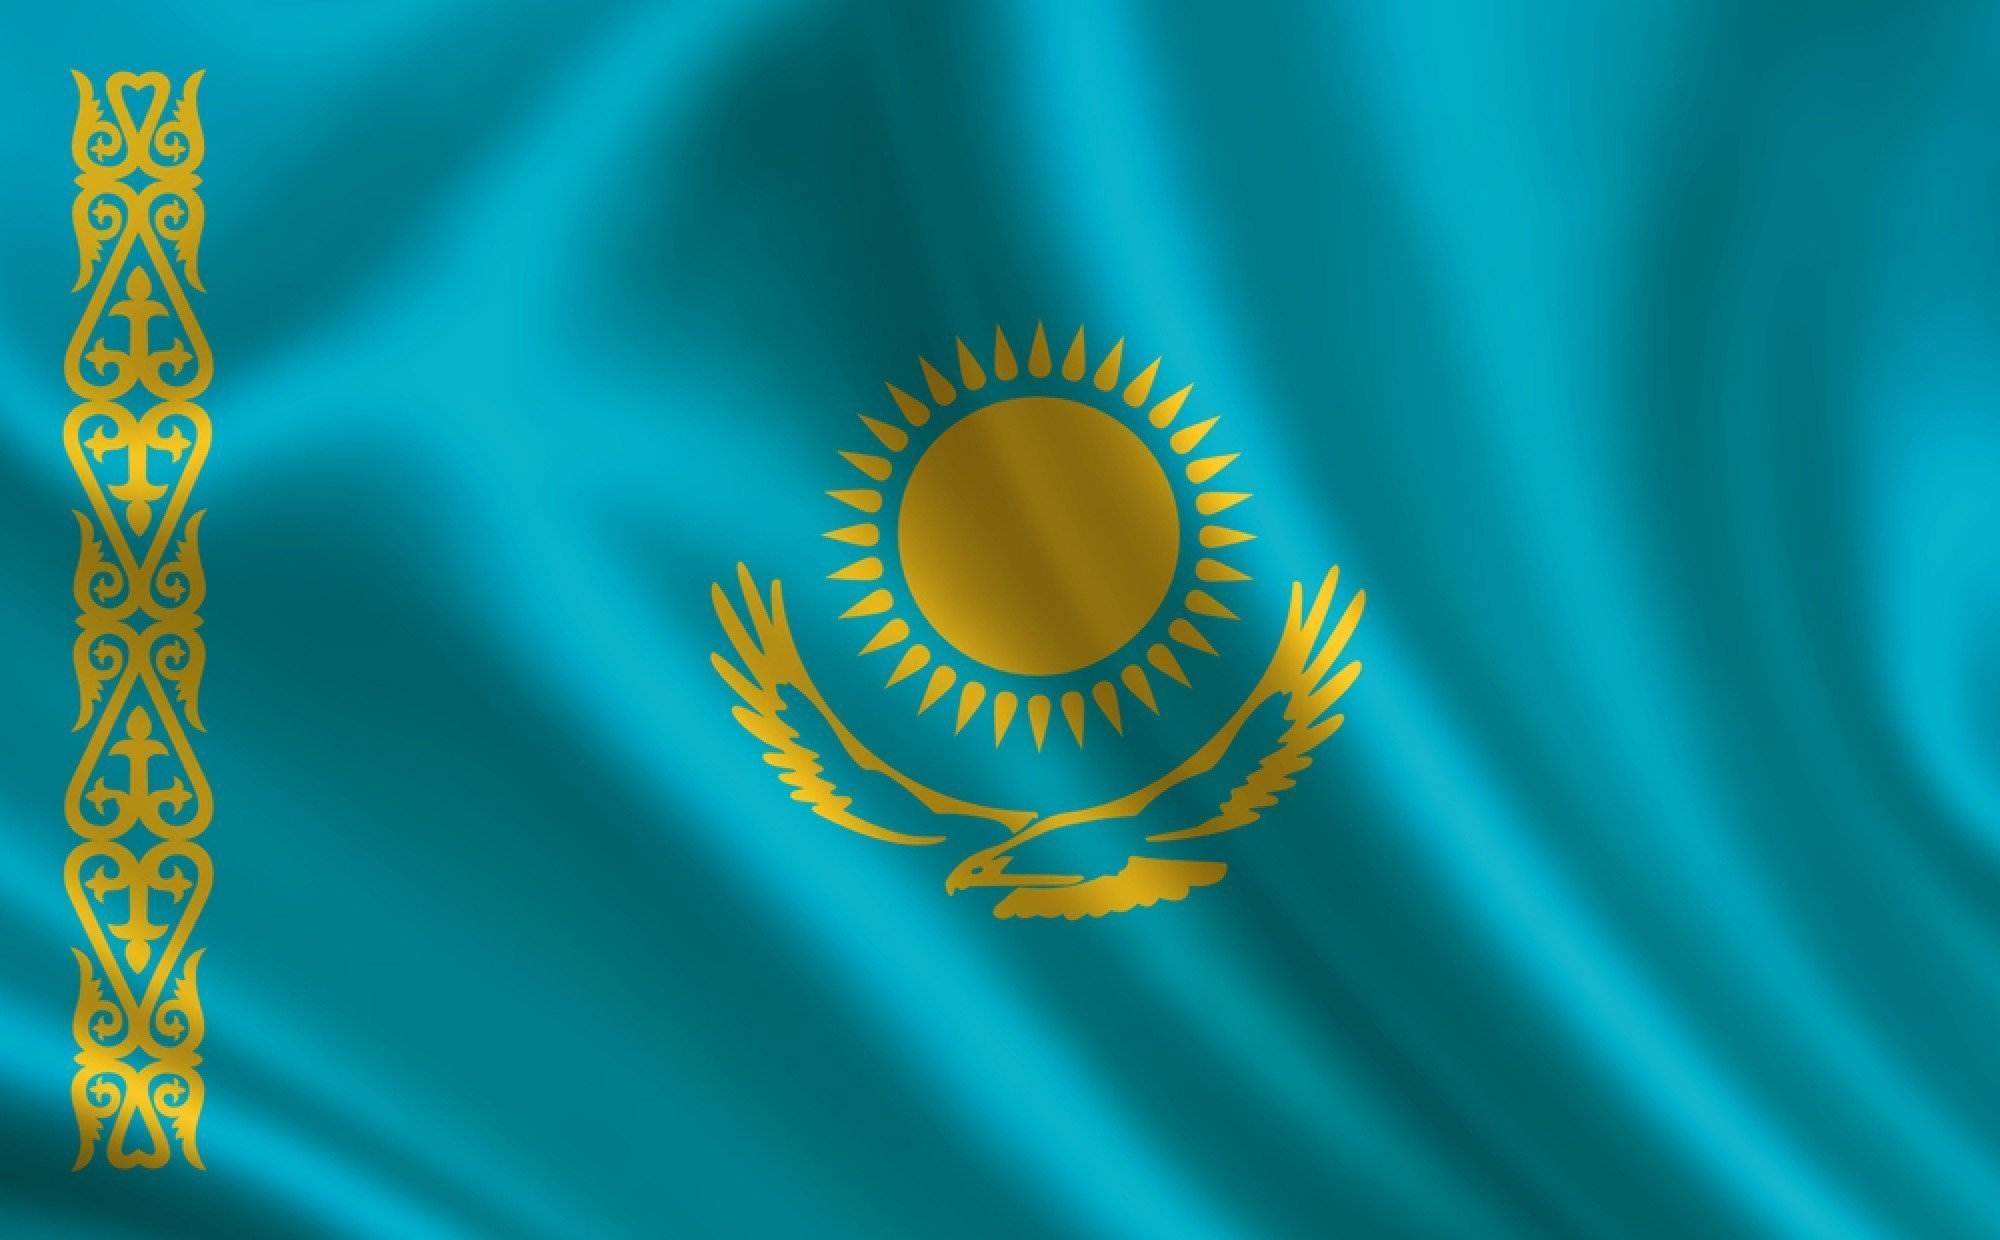 Фонком казахстан. Флаг Республики Казахстан. Флаг Казахстана и Казахстан. Флаг казахстанский флаг. Казах флаг Казахстана.